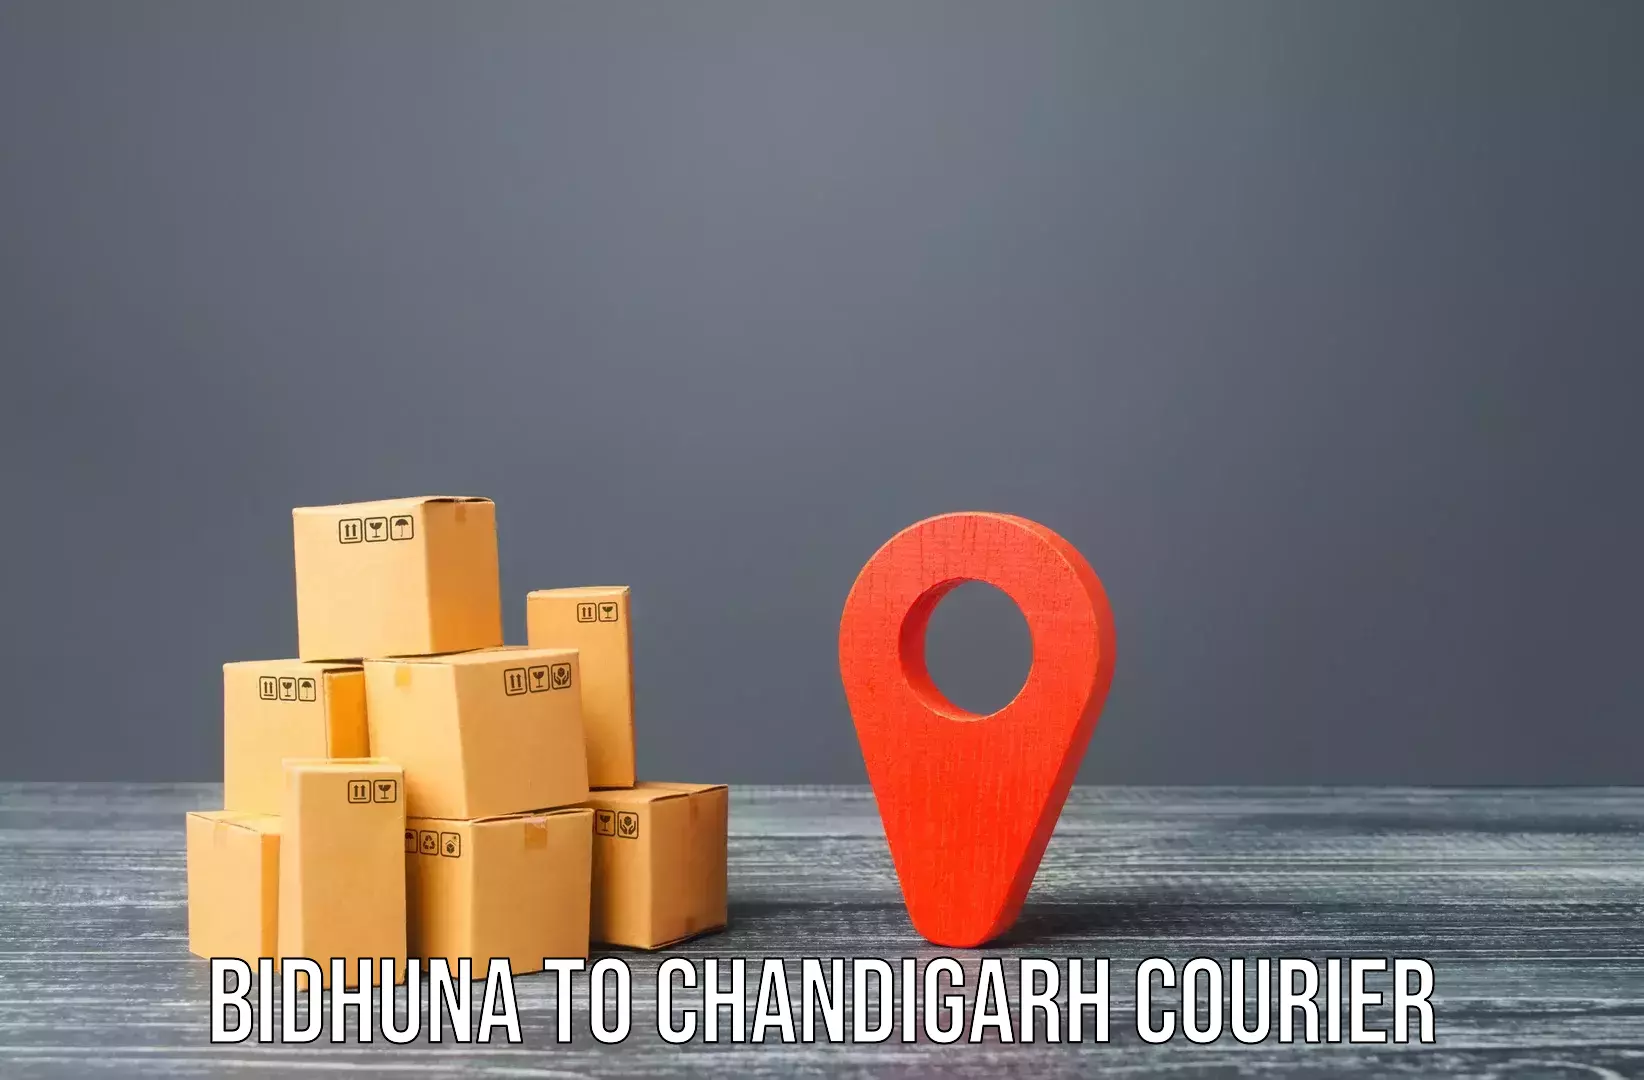 Home goods moving company Bidhuna to Chandigarh